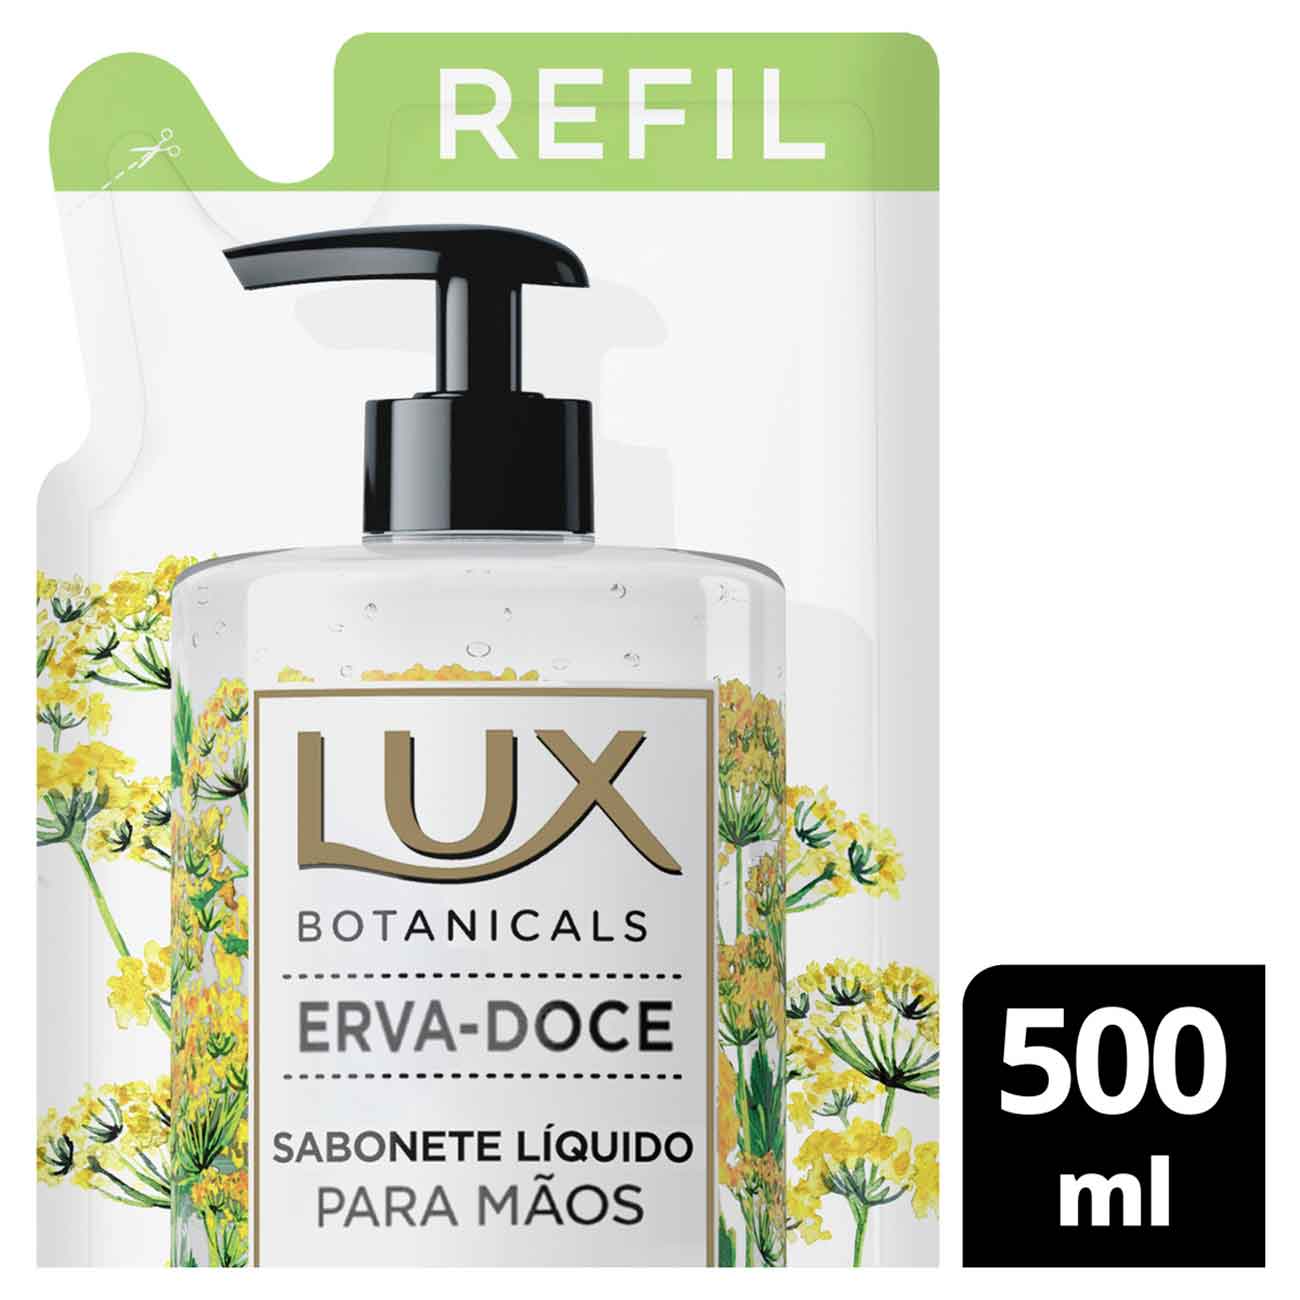 Sabonete Lquido Lux Botanicals Mos Erva-Doce 500mL